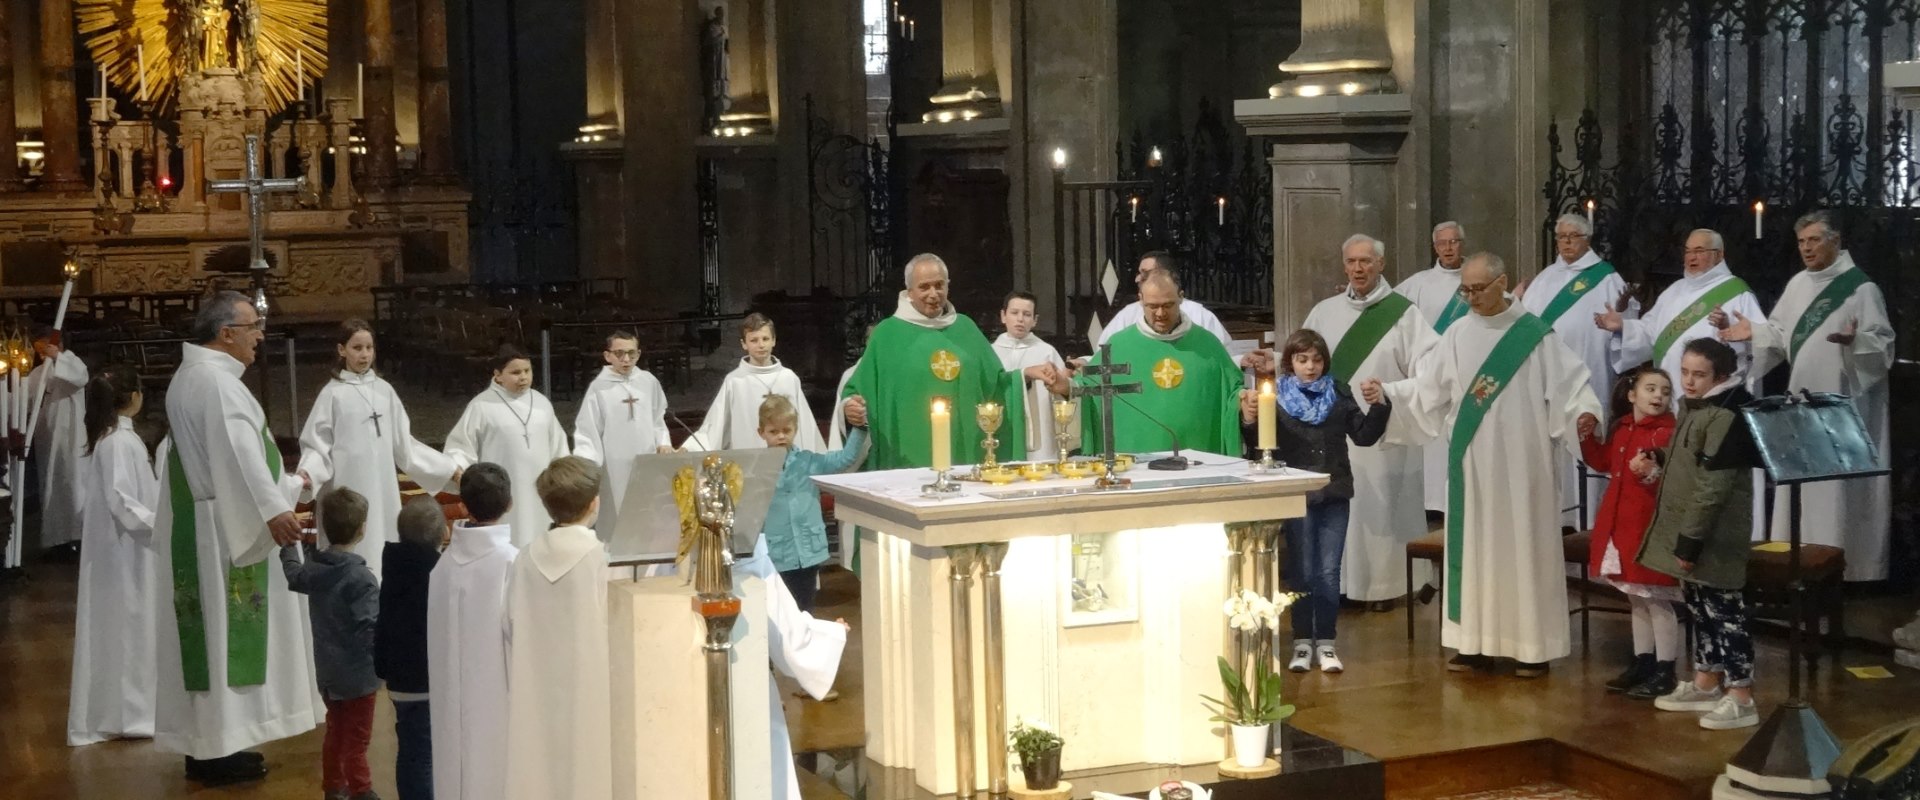 Diaconat F Marquant 2019 02 24 (17)